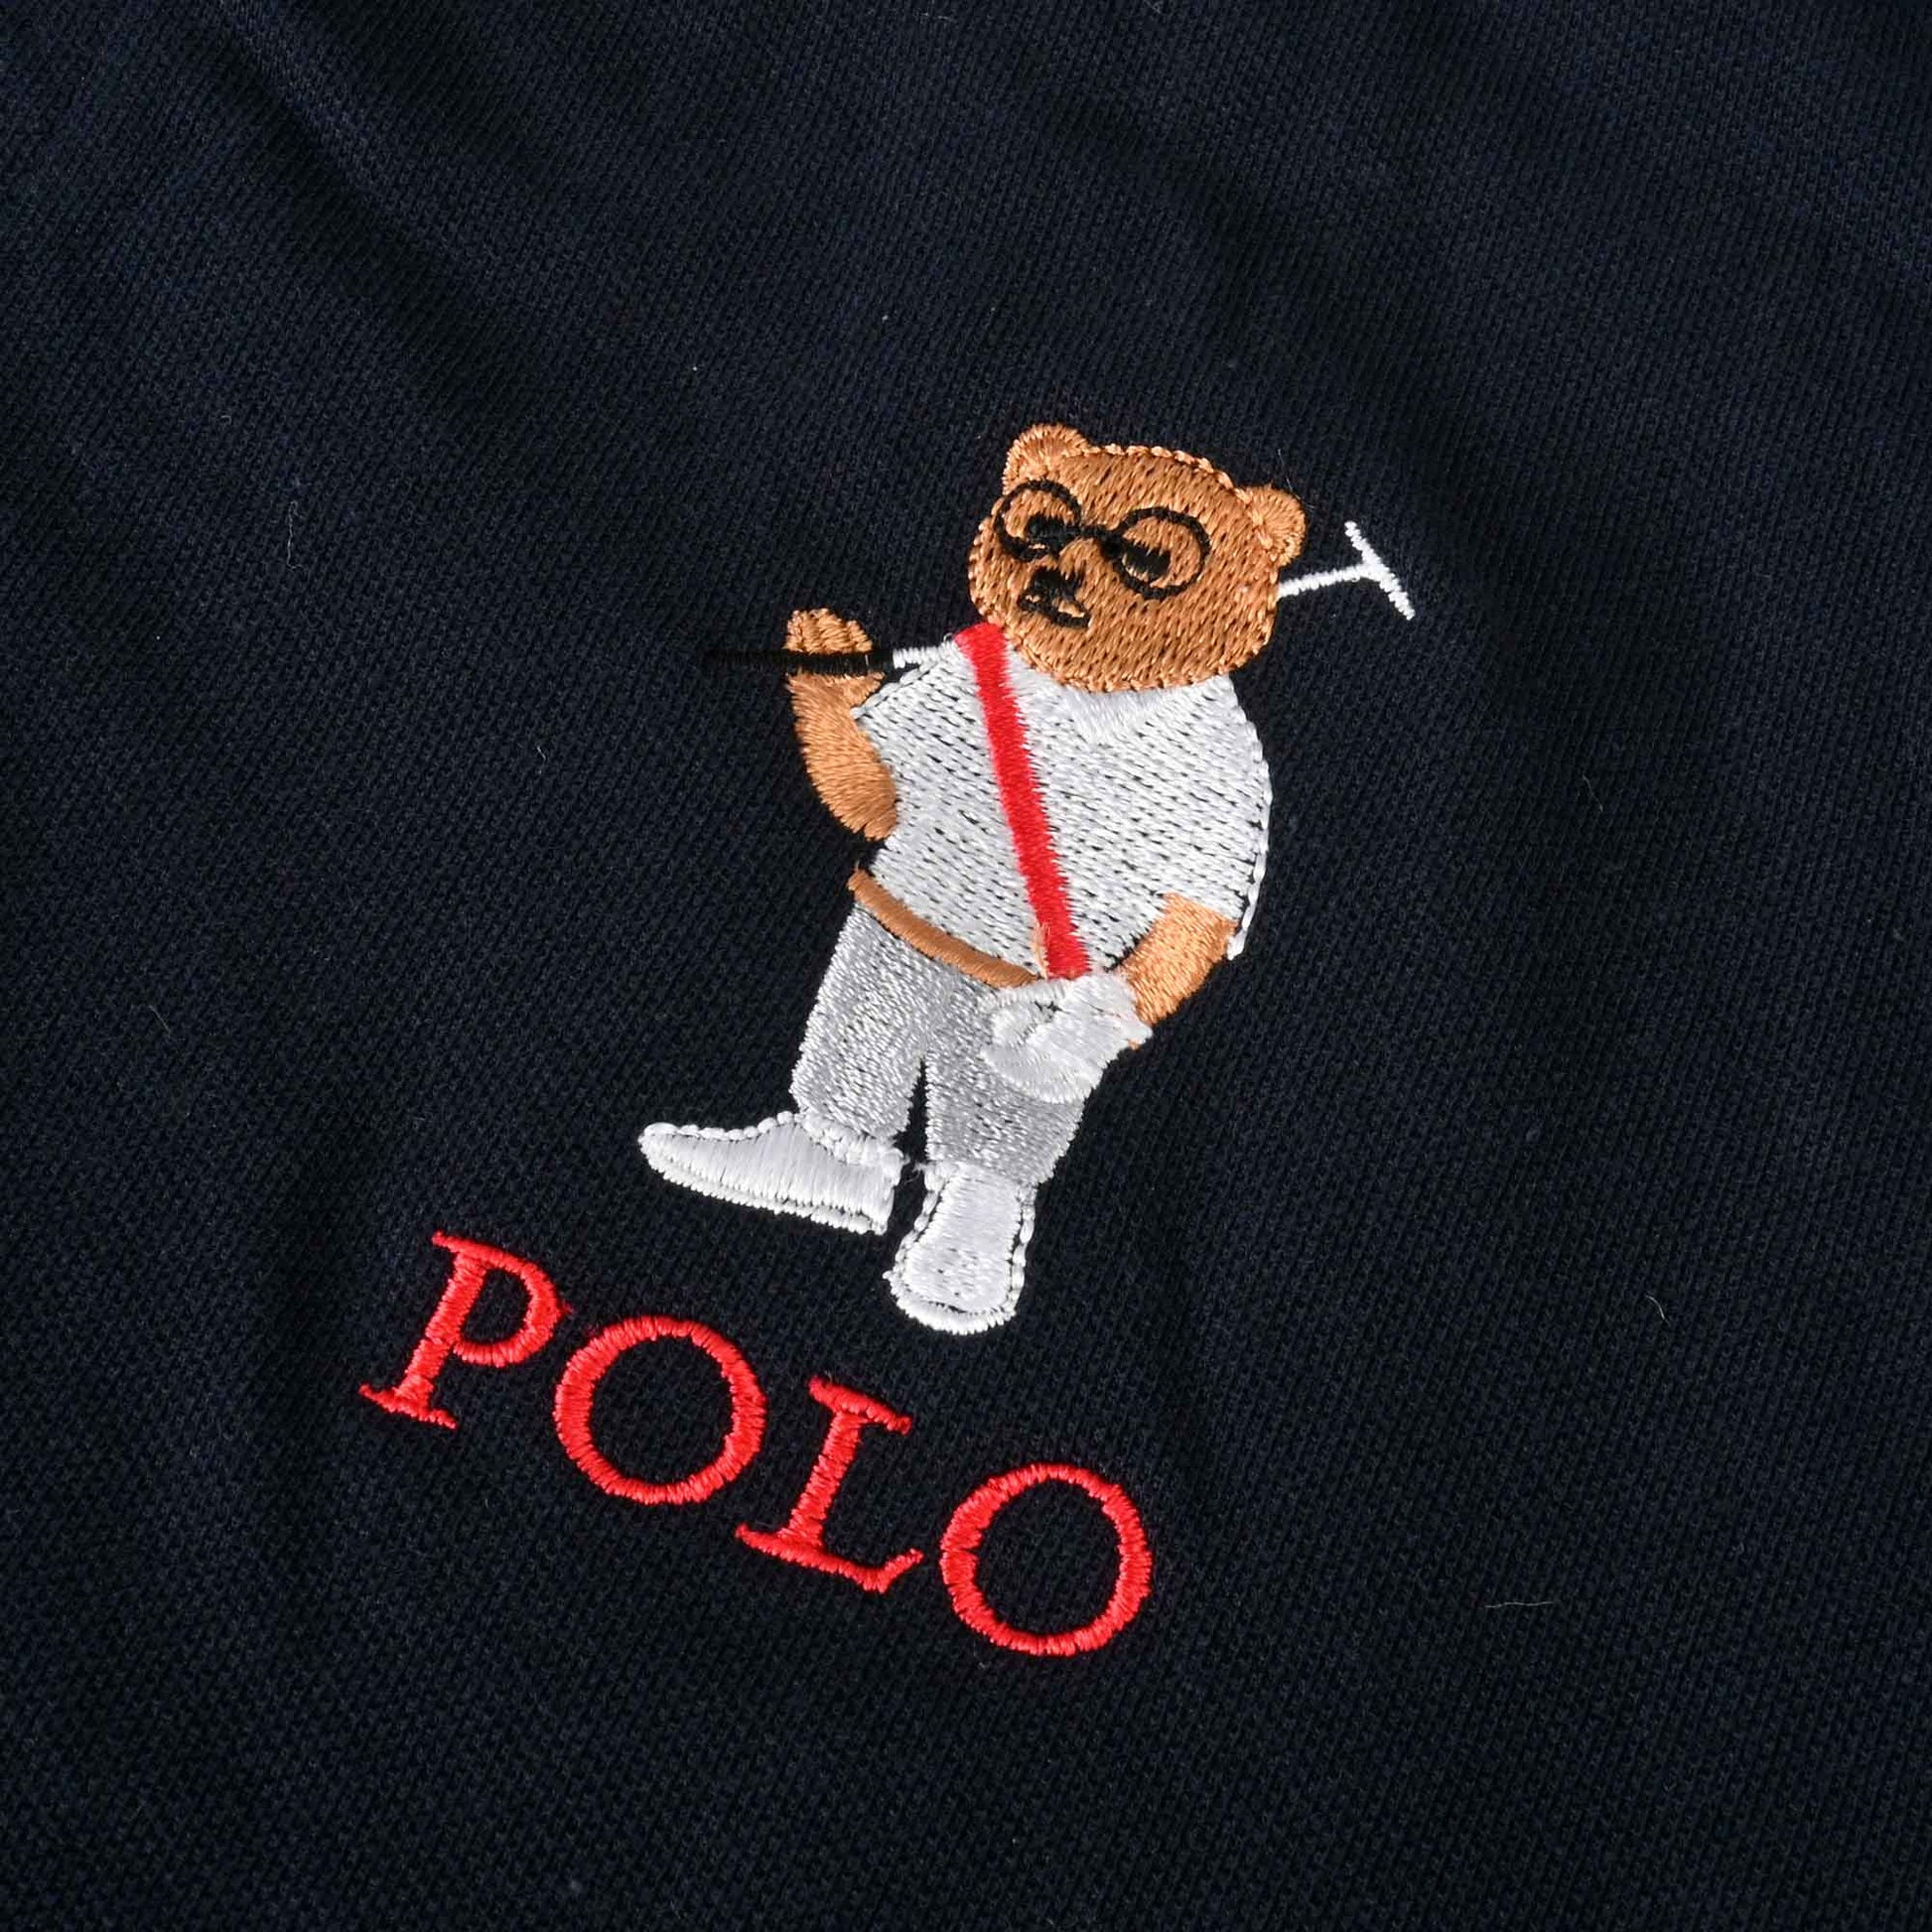 Polo Republica Men's Polo Bear Embroidered Short Sleeve Polo Shirt Men's Polo Shirt Polo Republica 